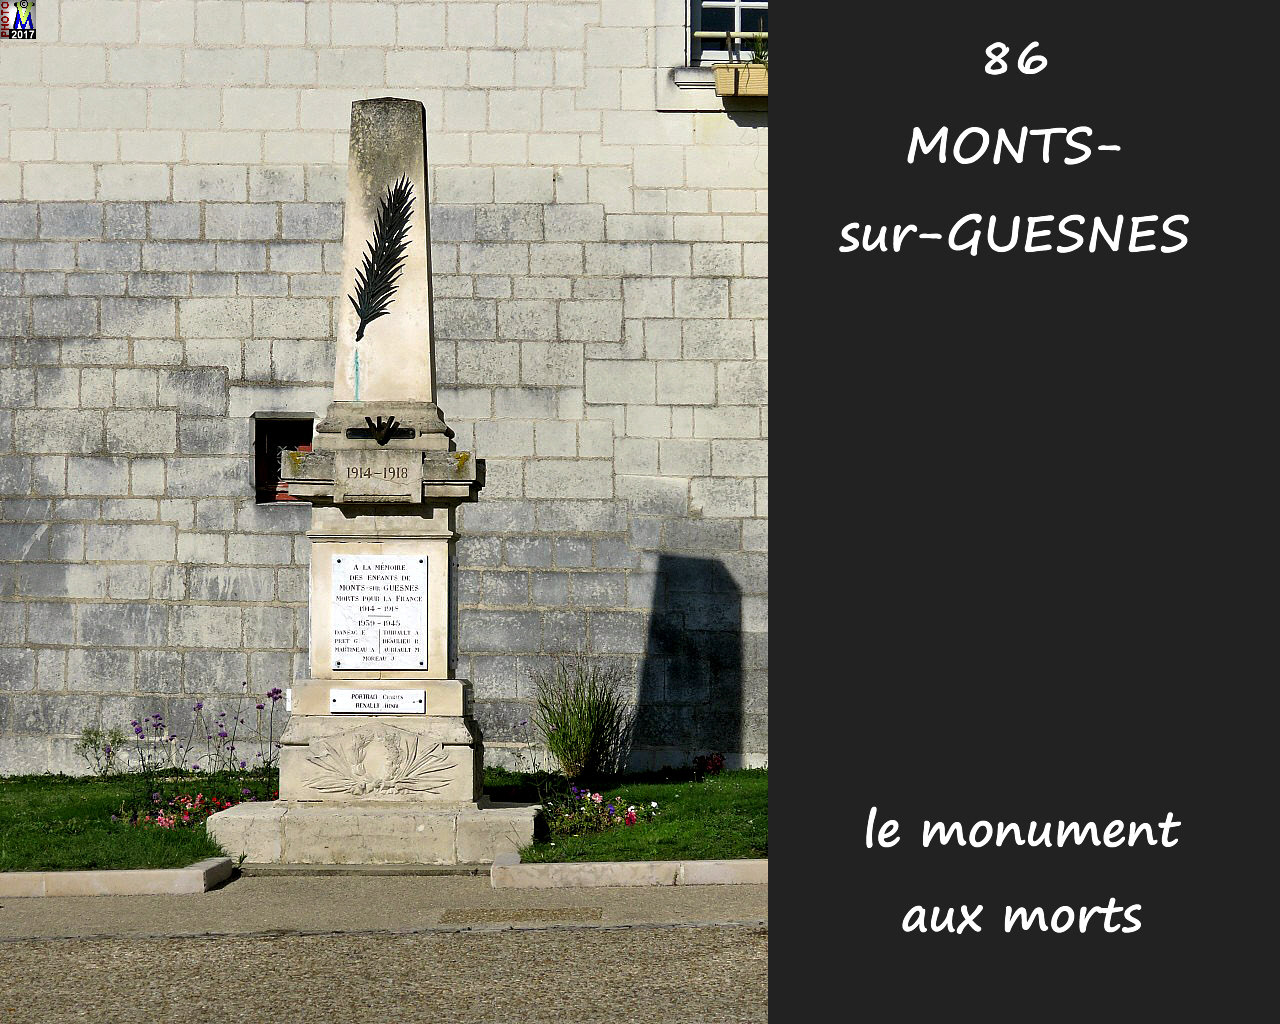 86MONTS-sur-GUESNES_morts_100.jpg